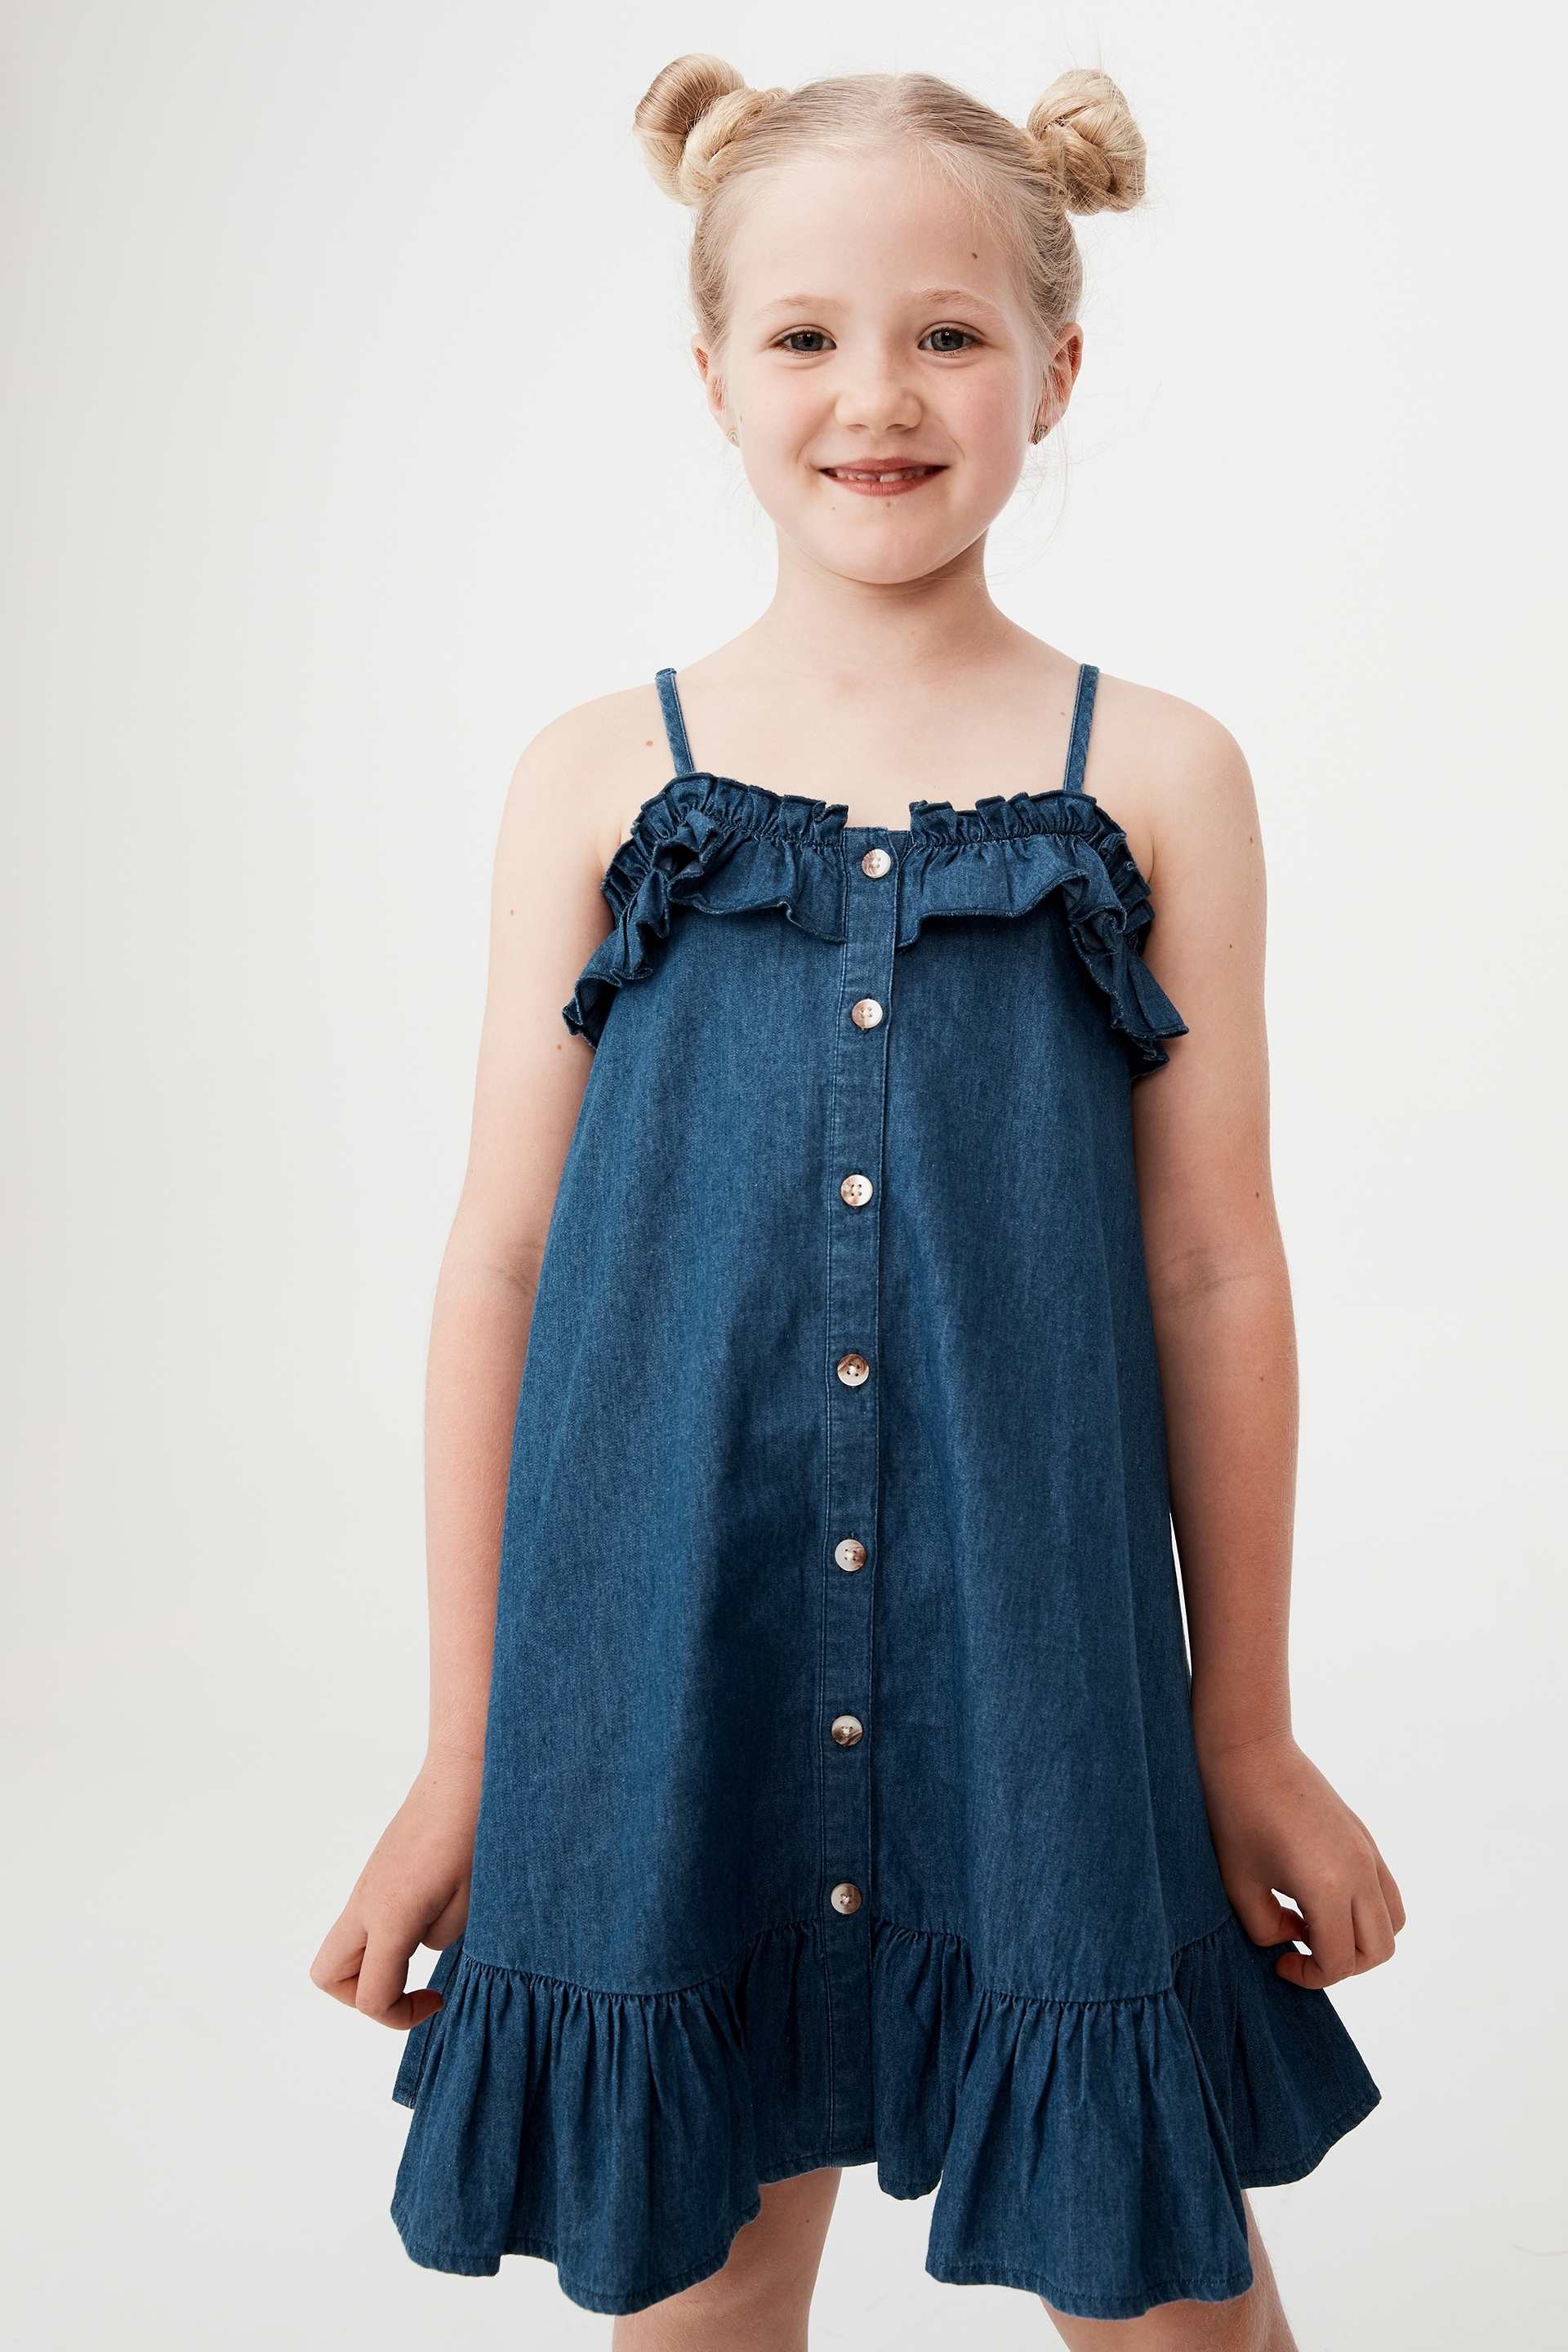 Cotton On Kids - Libby Sleeveless Dress - Indigo blue wash